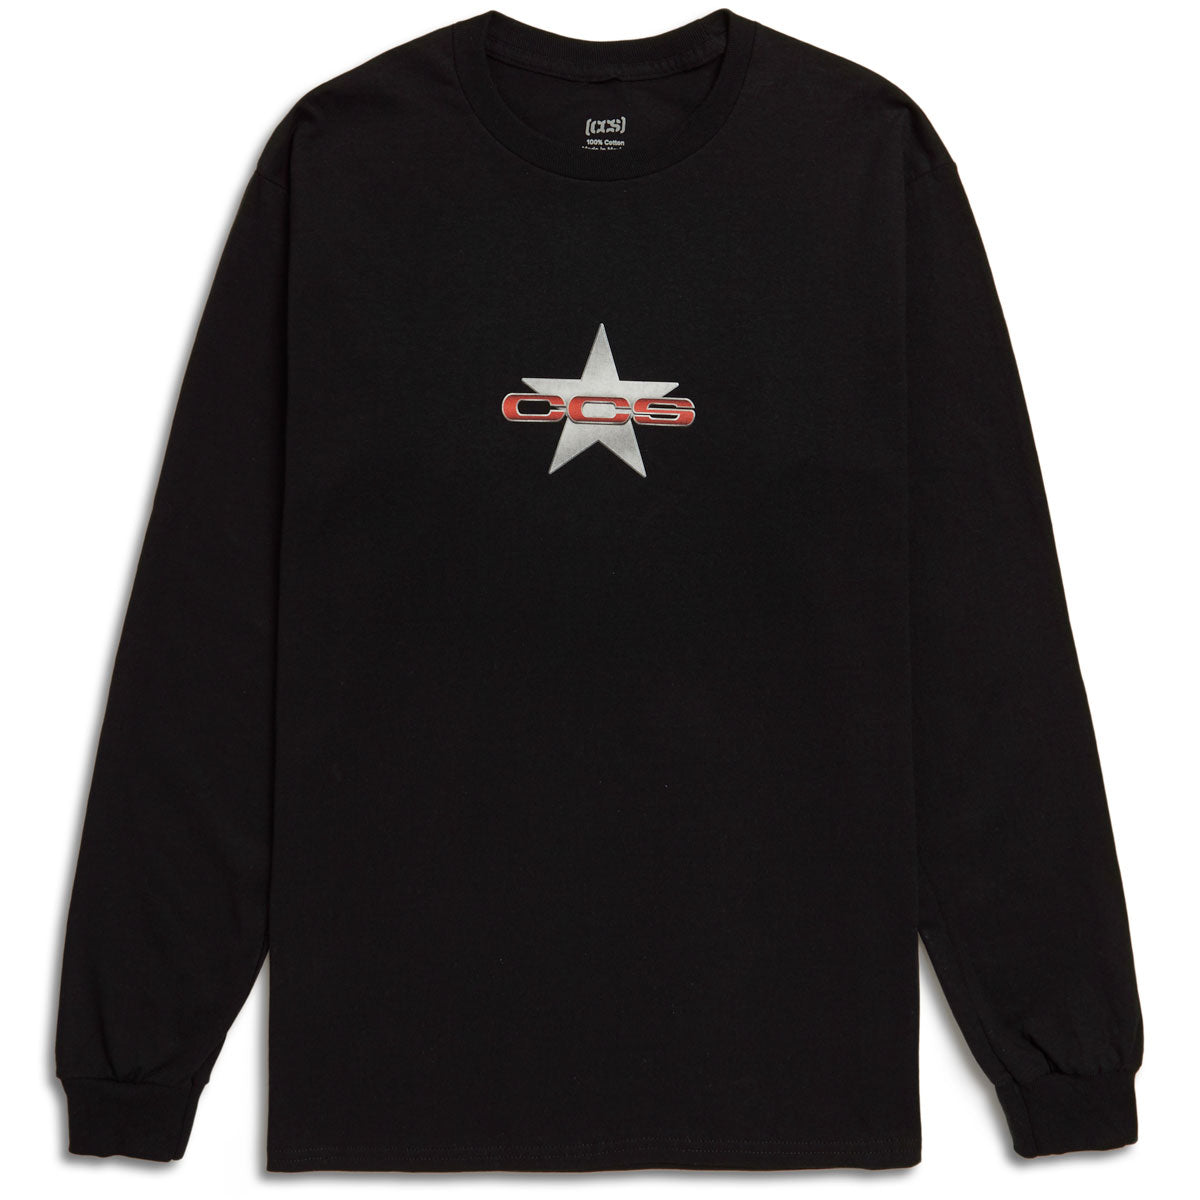 CCS 97 Star Long Sleeve T-Shirt - Black - XL image 1